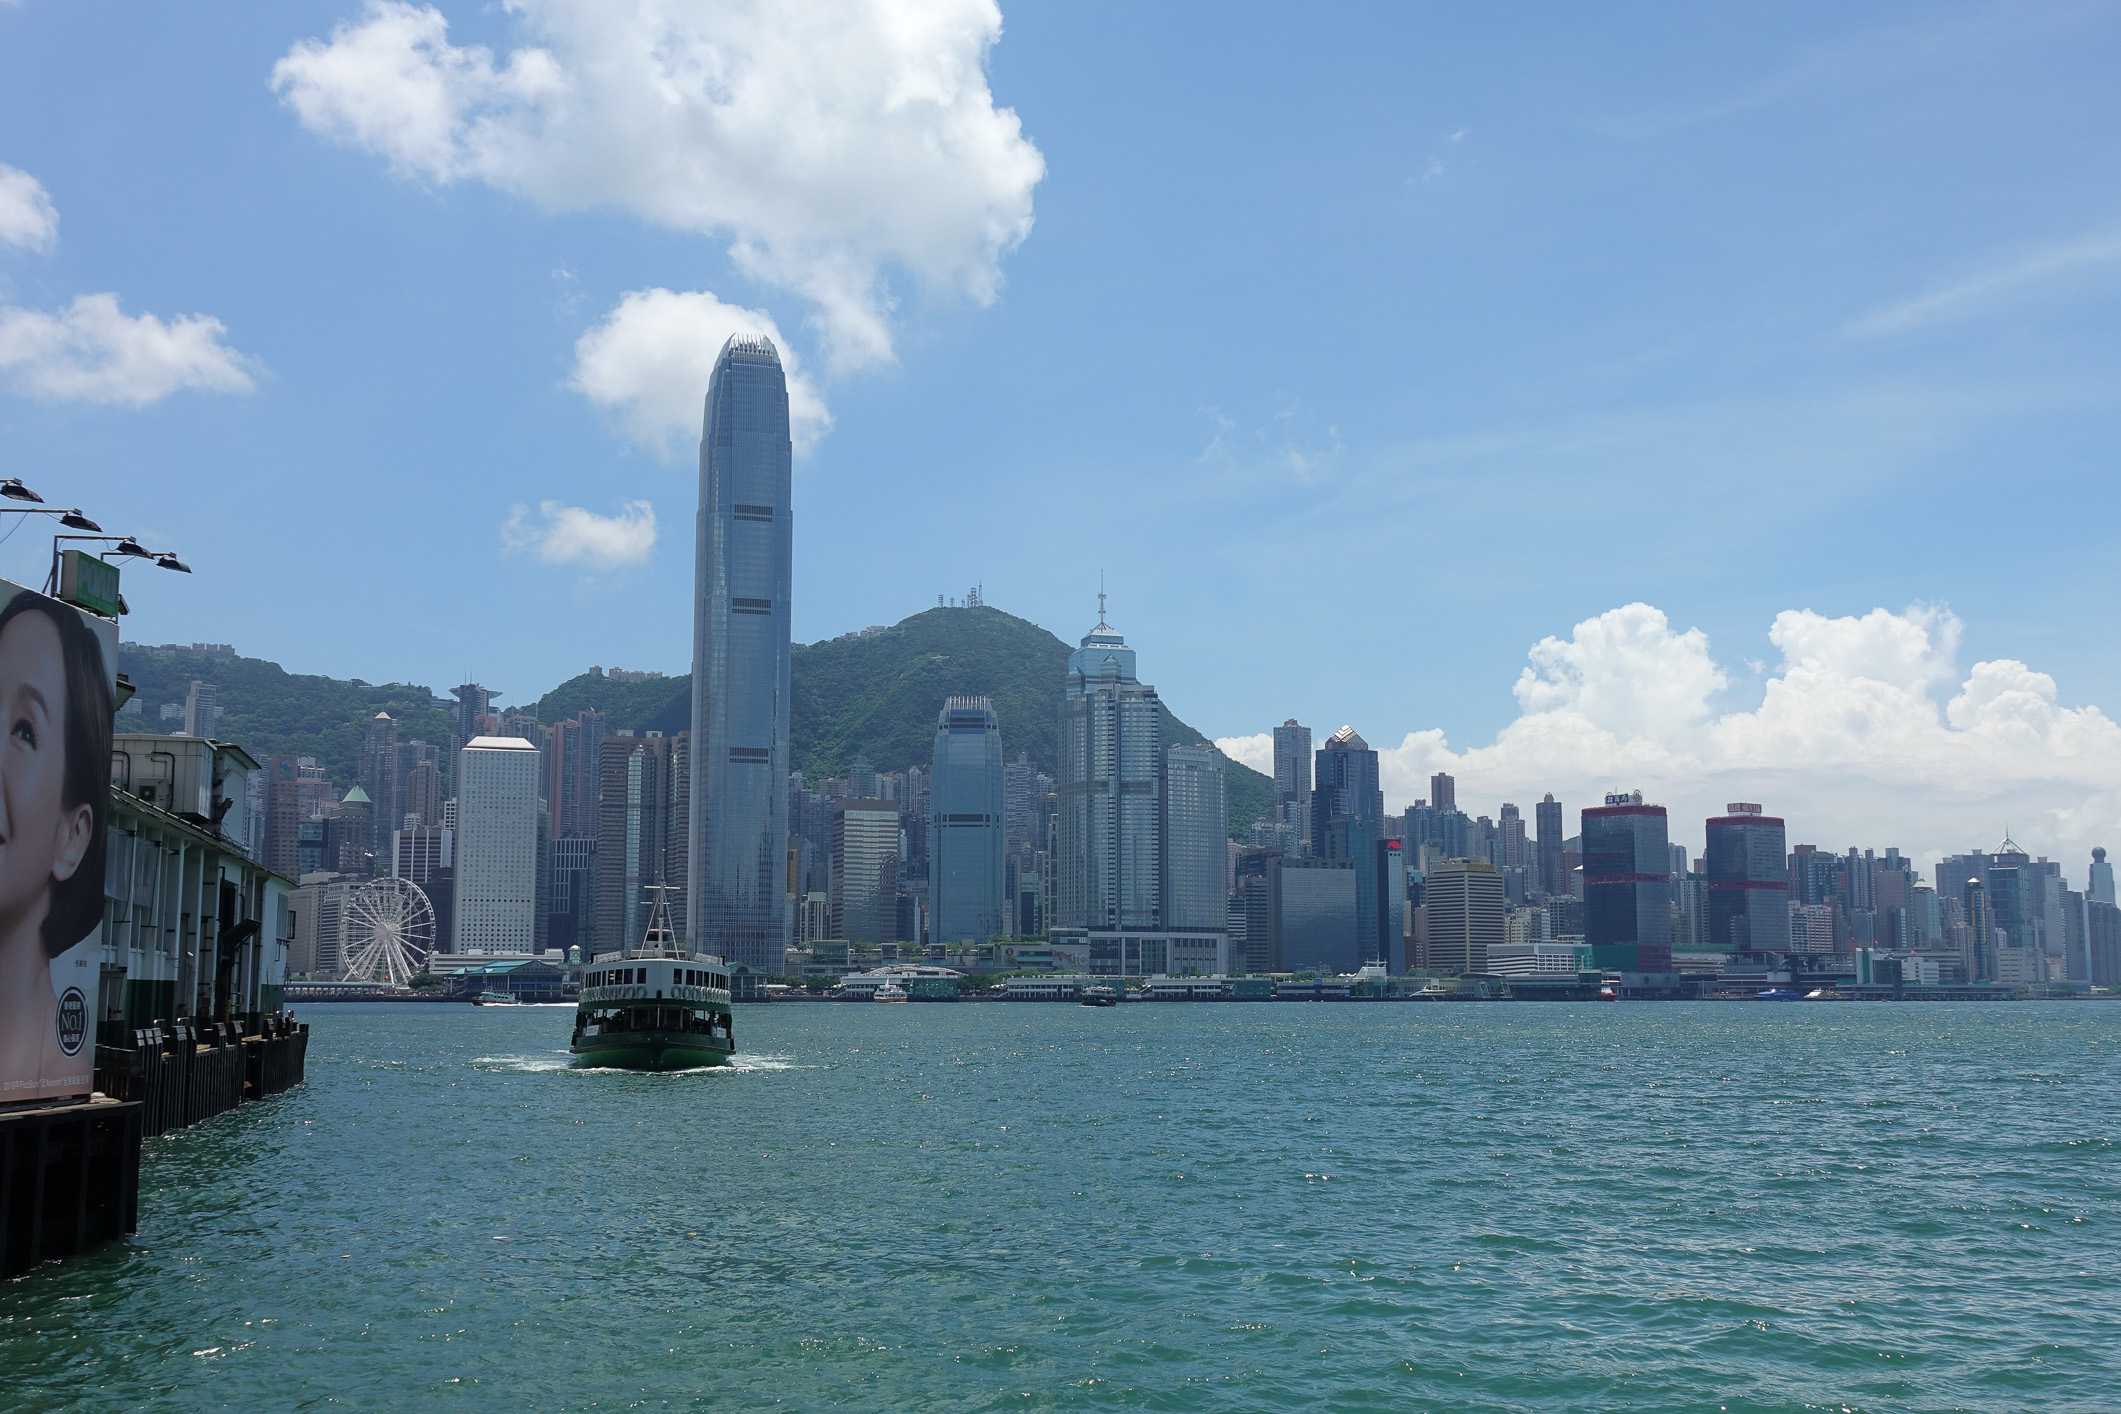 Hong Kong's Victoria harbor